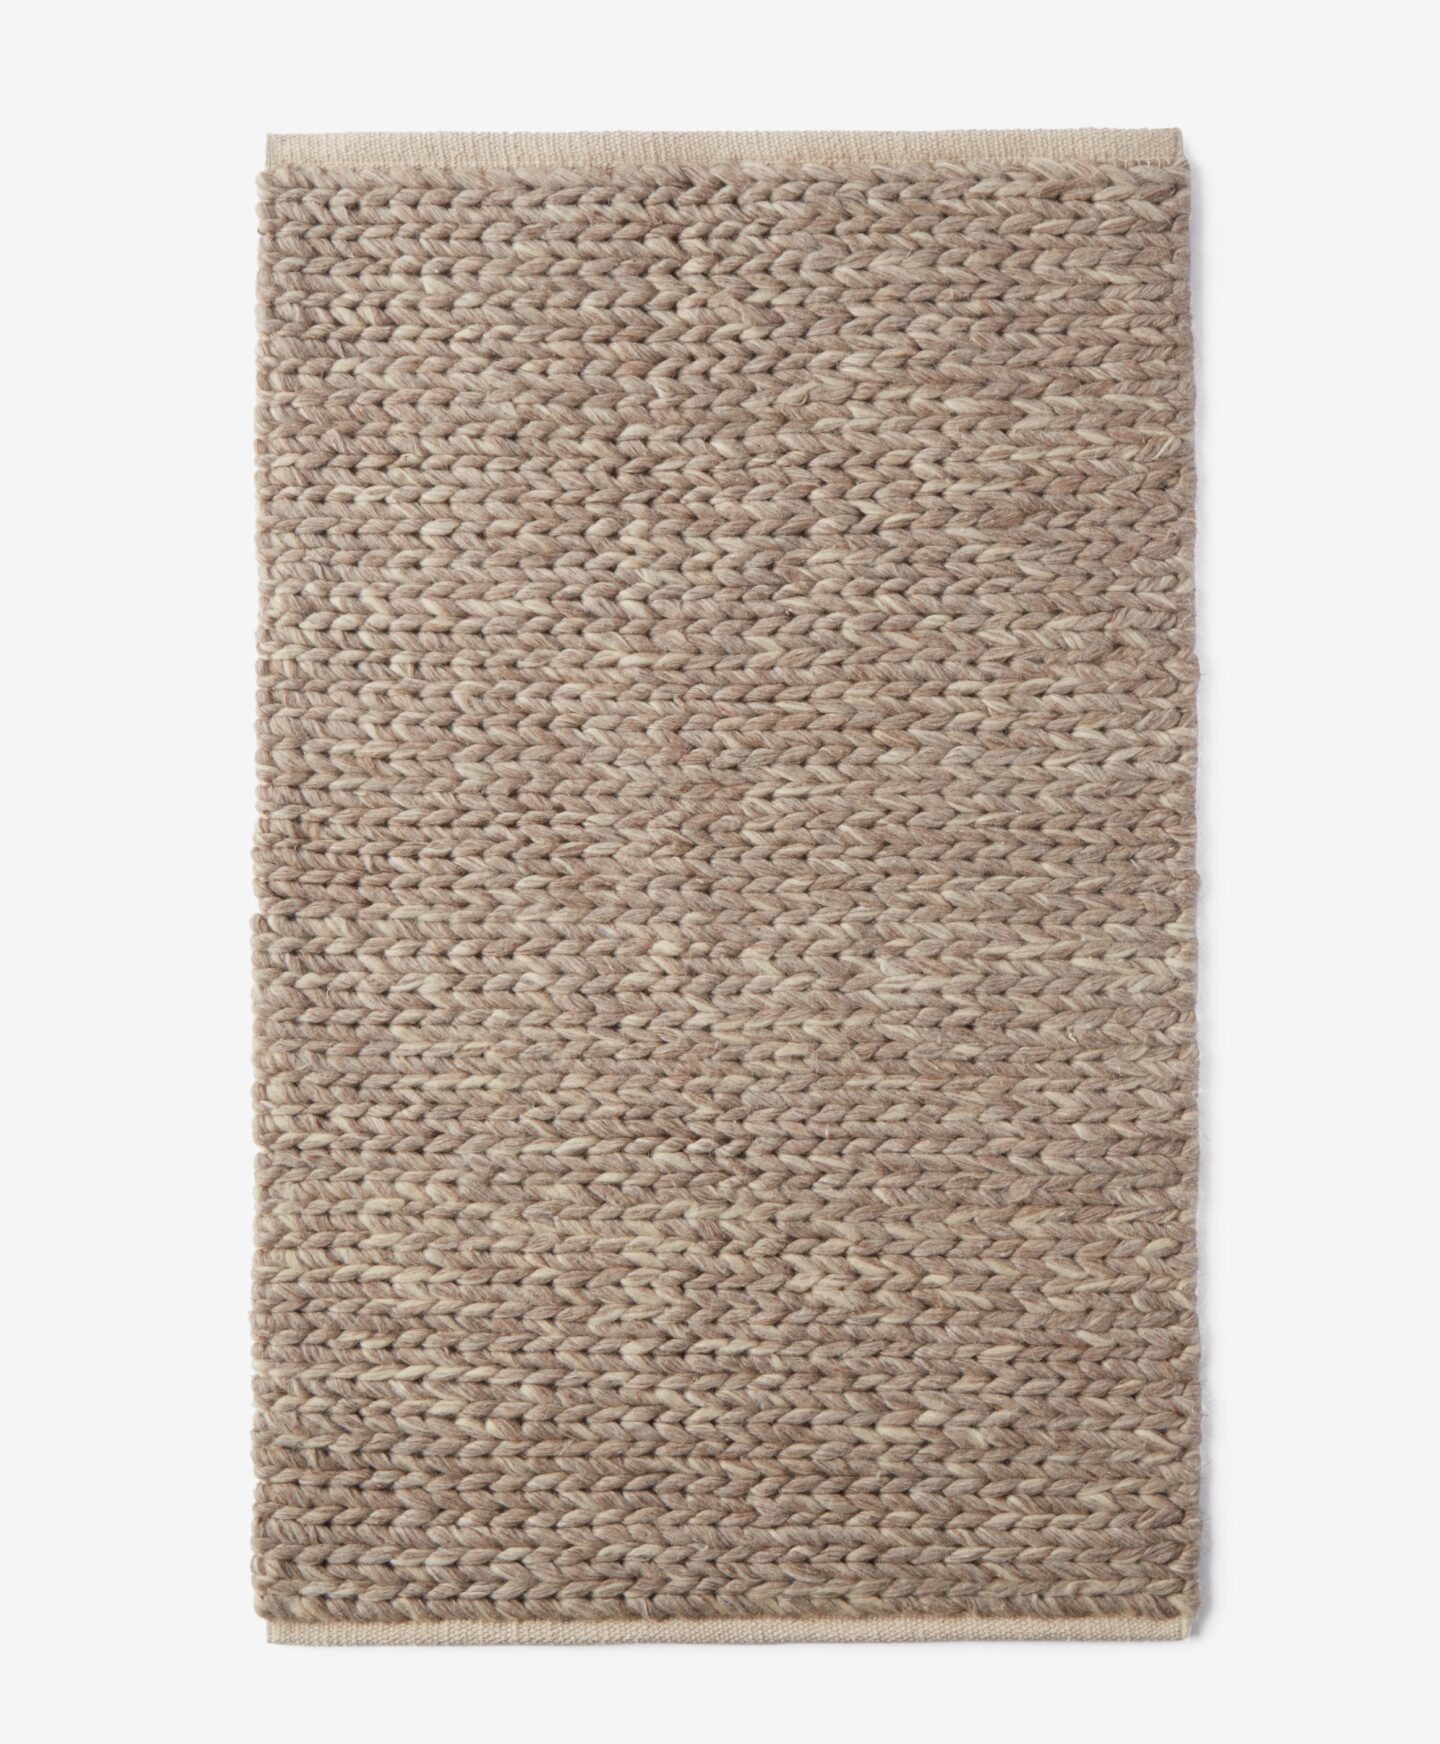 Διακοσμητικό χαλί με πλέξιμο, χρώμα καφέ, 60 cm x 90 cm